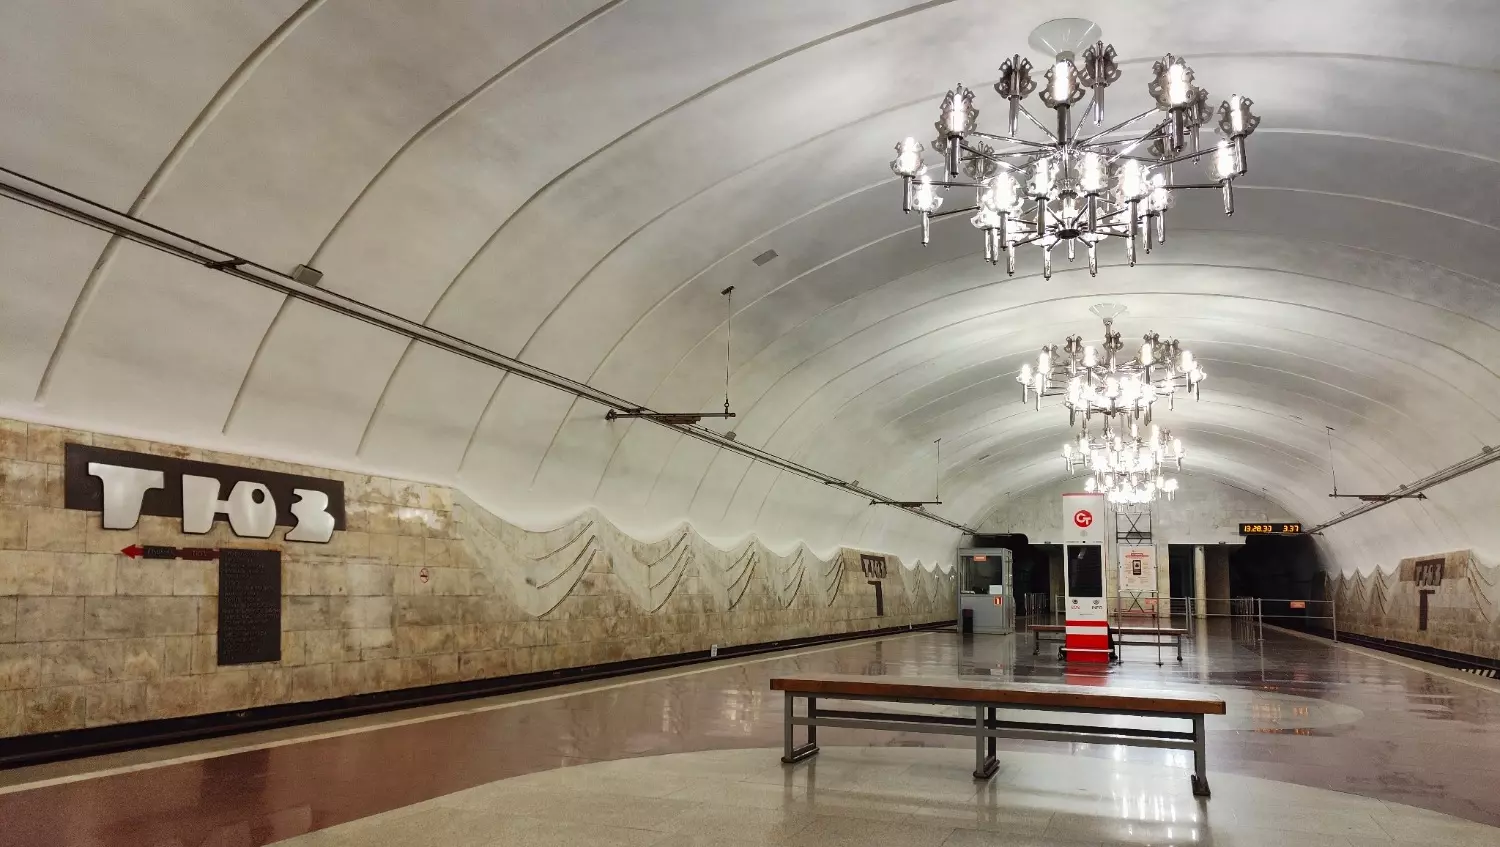 Подземная станция скоростного трамвая "ТЮЗ" в Волгограде